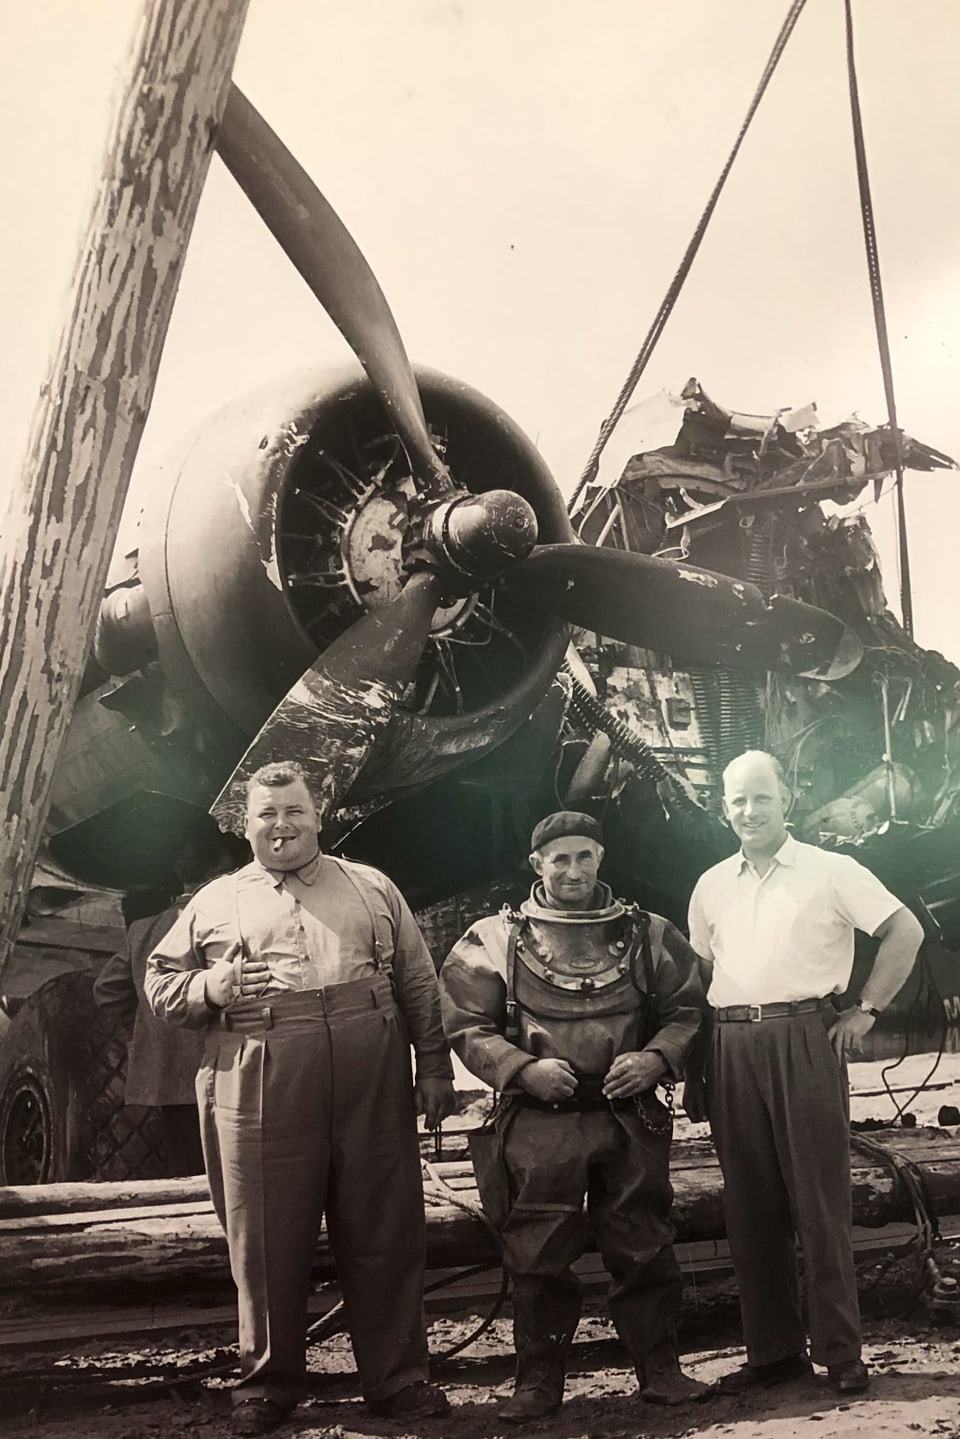 Martin Schaffner, Tuacher Gottfried Scherrer und Josef Schnellmann stehen vor dem Flugzeugwrack.